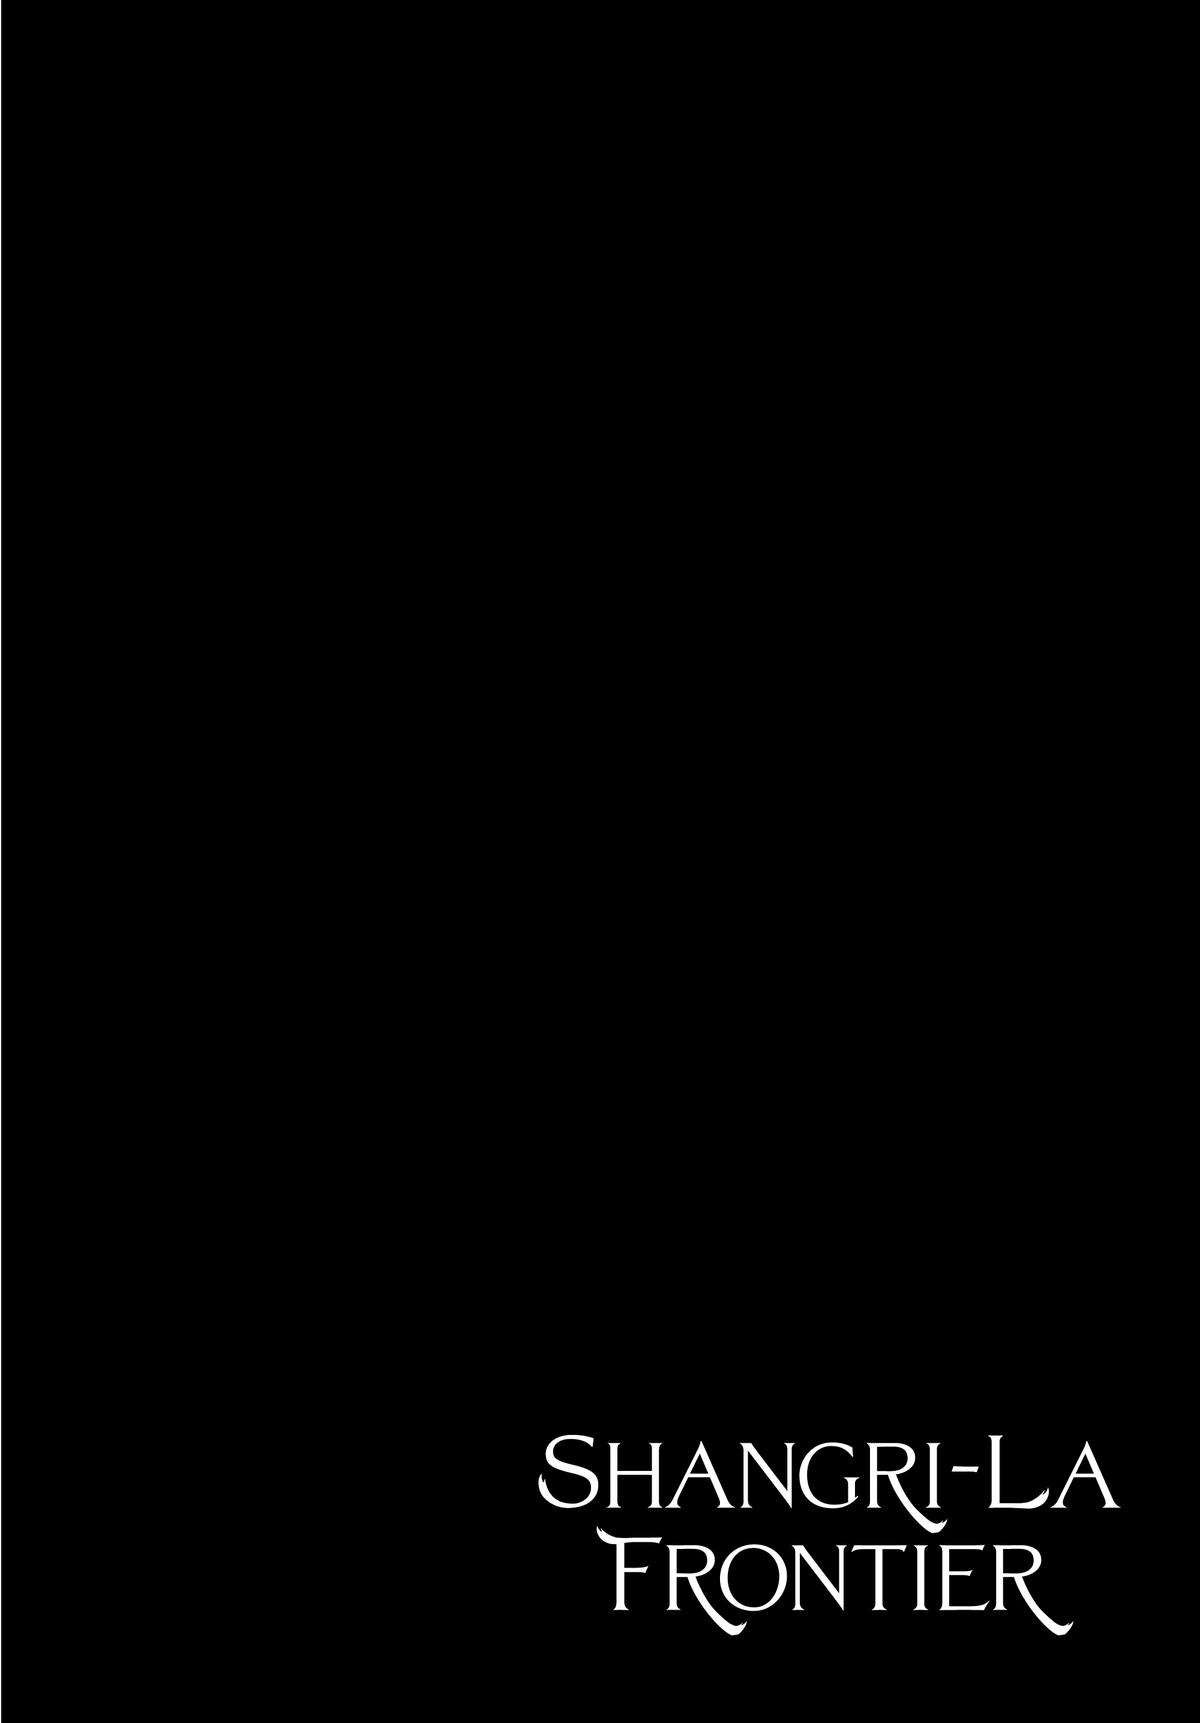 Shangri-la Frontier, Chapter 149 image 02